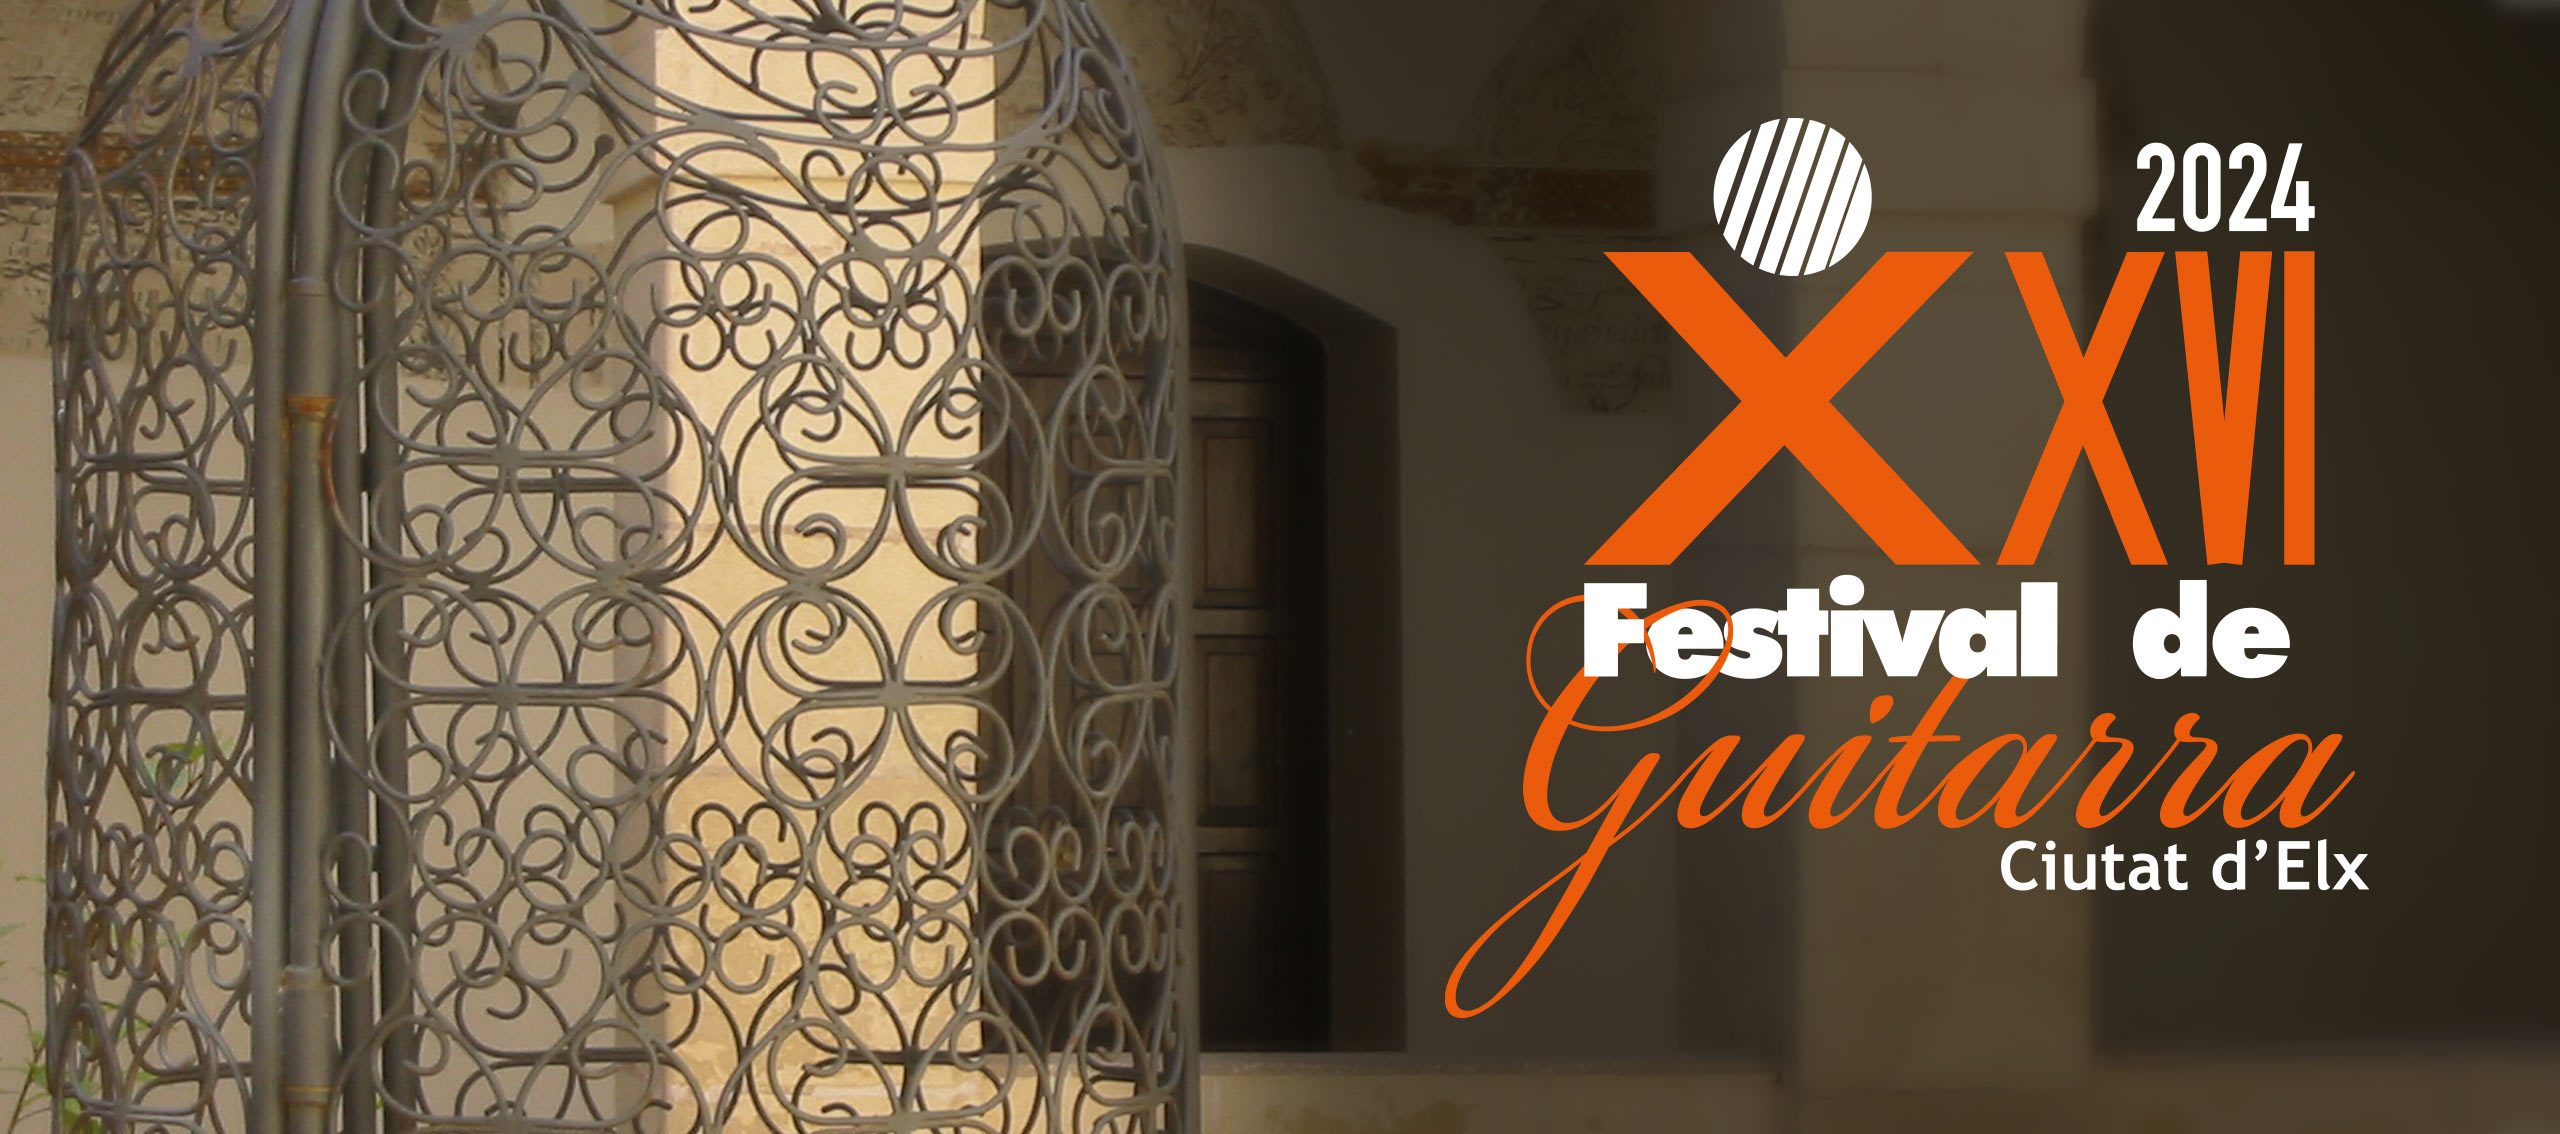 Cartel Festival de Guitarra Ciutat d'Elx 2024